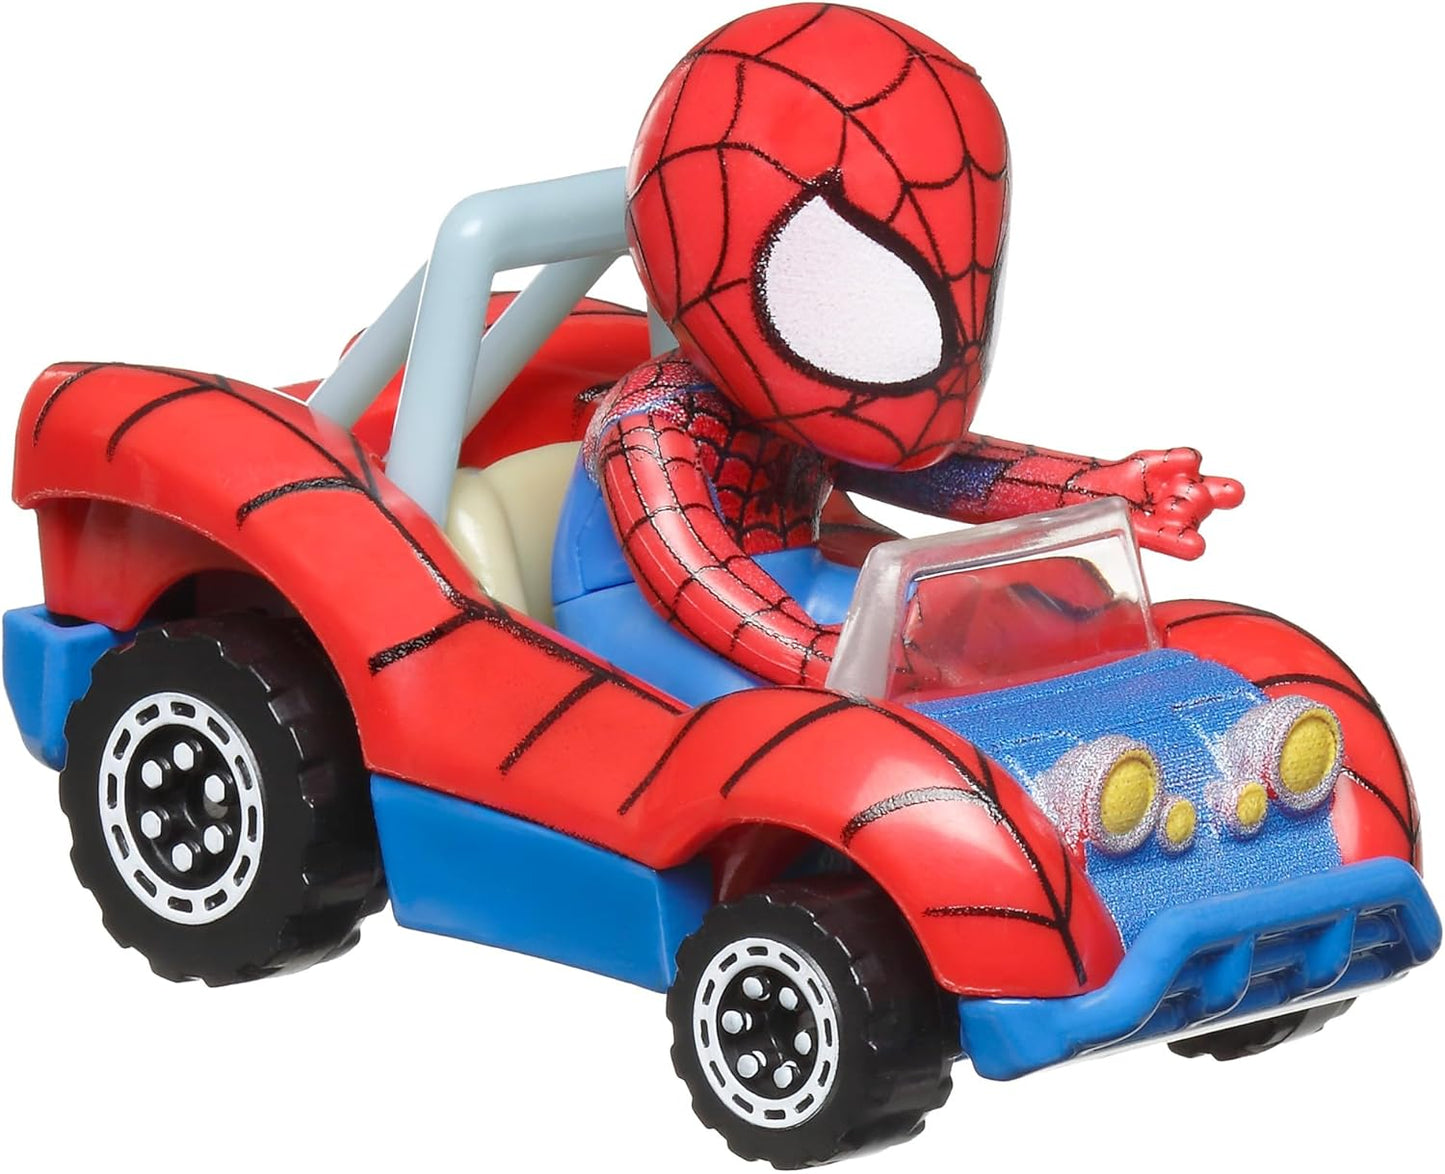 Hot Wheels  Carros de brinquedo, conjunto de 2 veículos fundidos RacerVerse com drivers de personagens otimizados para desempenho na pista RacerVerse (os estilos podem variar), HRT90